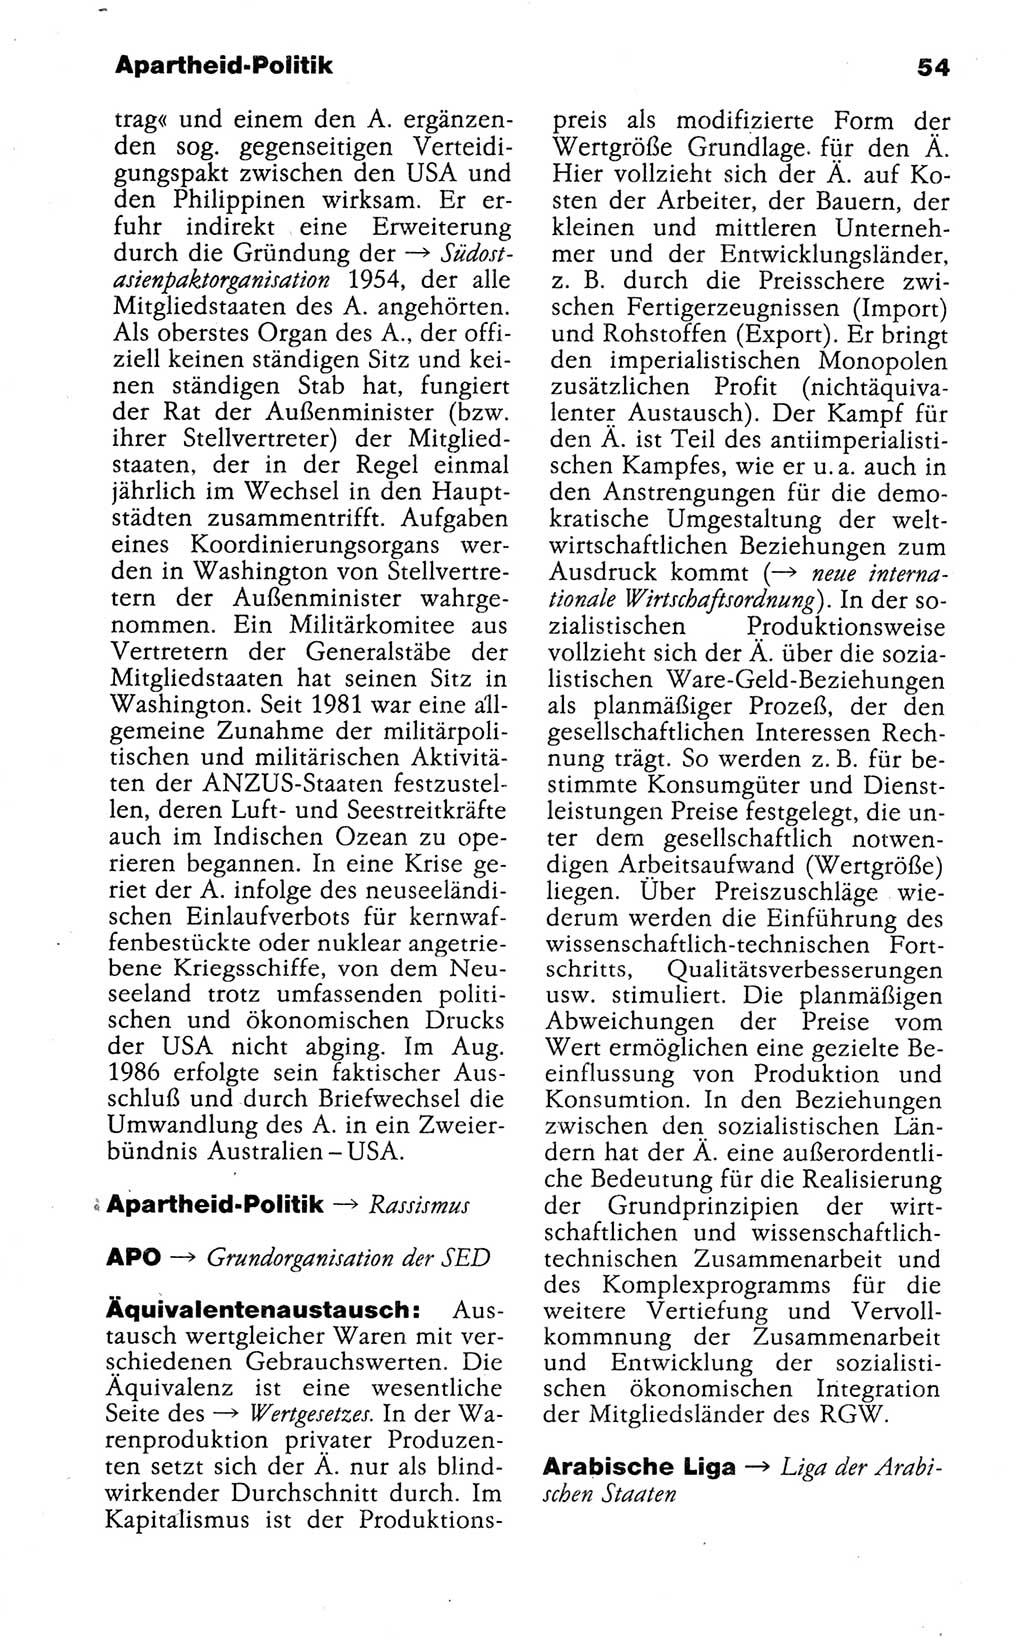 Kleines politisches Wörterbuch [Deutsche Demokratische Republik (DDR)] 1988, Seite 54 (Kl. pol. Wb. DDR 1988, S. 54)